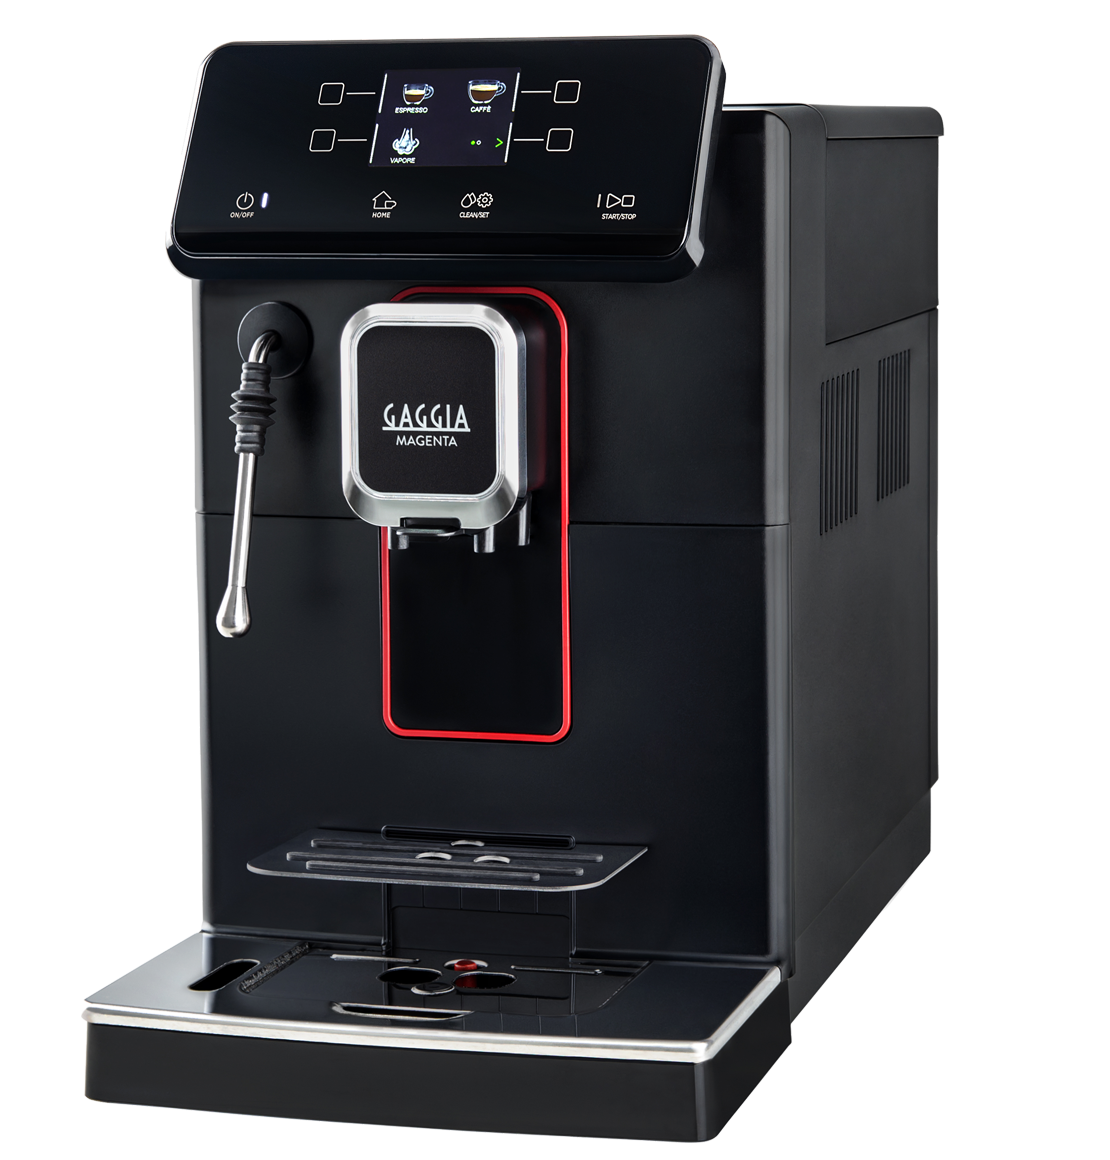 【即納】【５年保証+オリジナル特典付】【送料無料】GAGGIA ガジア 全自動コーヒーマシン MAGENTA PLUS